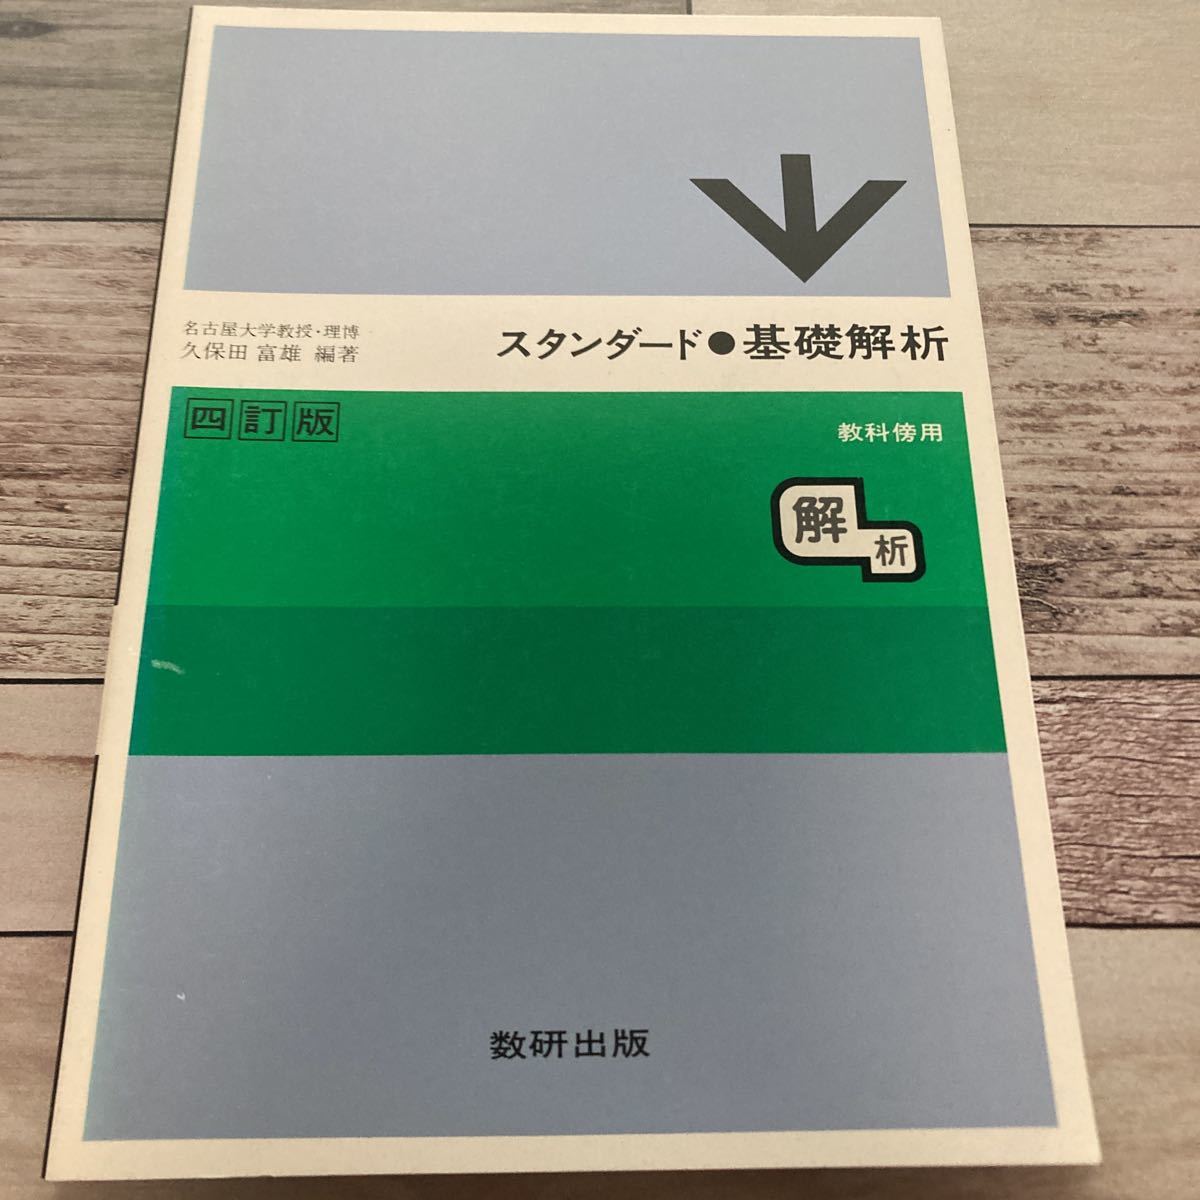 限定価格セール！】 【中古】 エグゾセを狙え NV) (ハヤカワ文庫 (1984